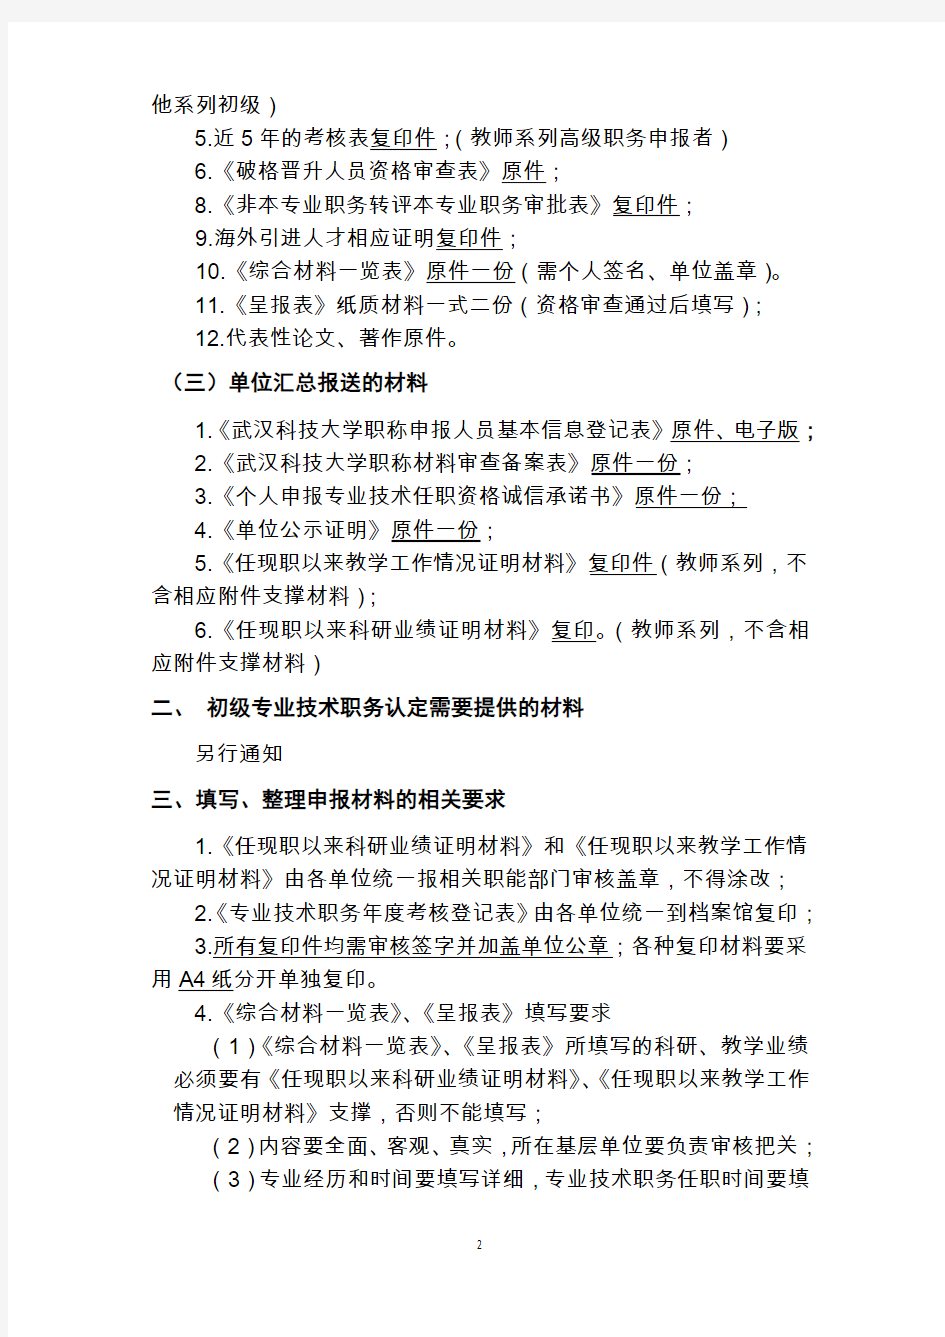 项目申报 - 武汉科技大学·人事处